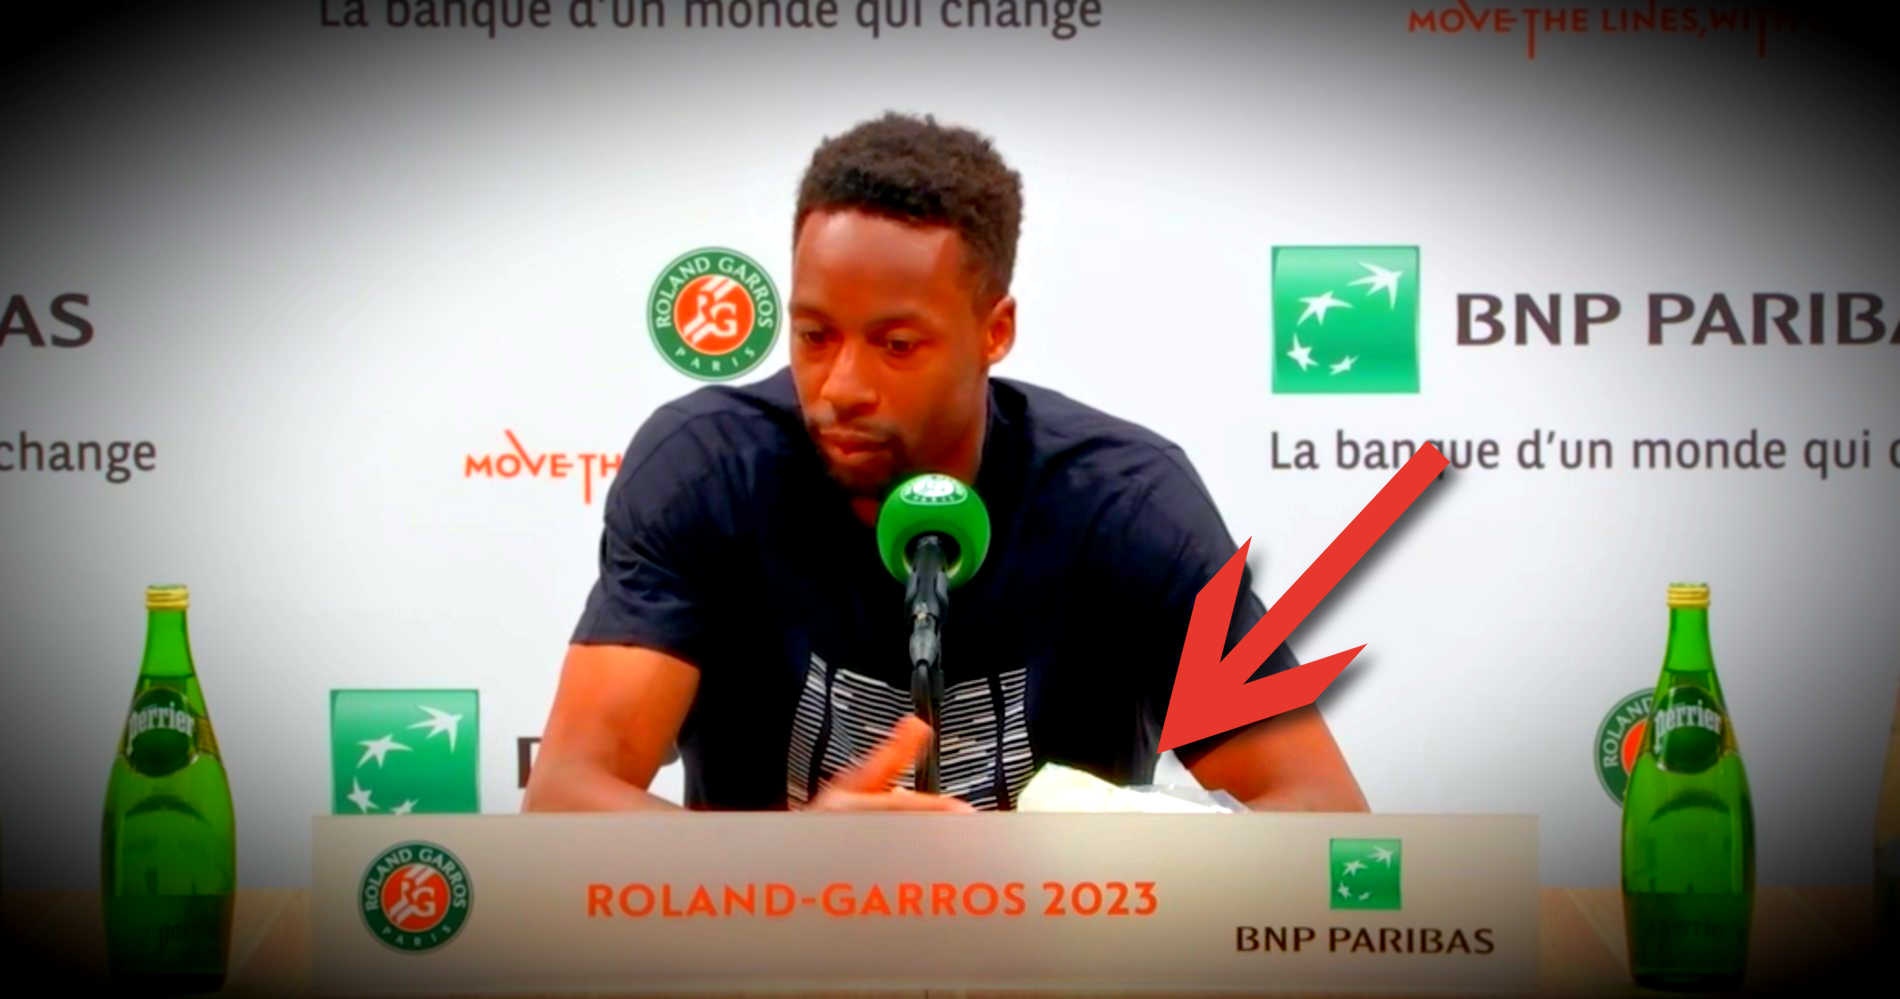 Gaël Monfils, Roland-Garros 2023